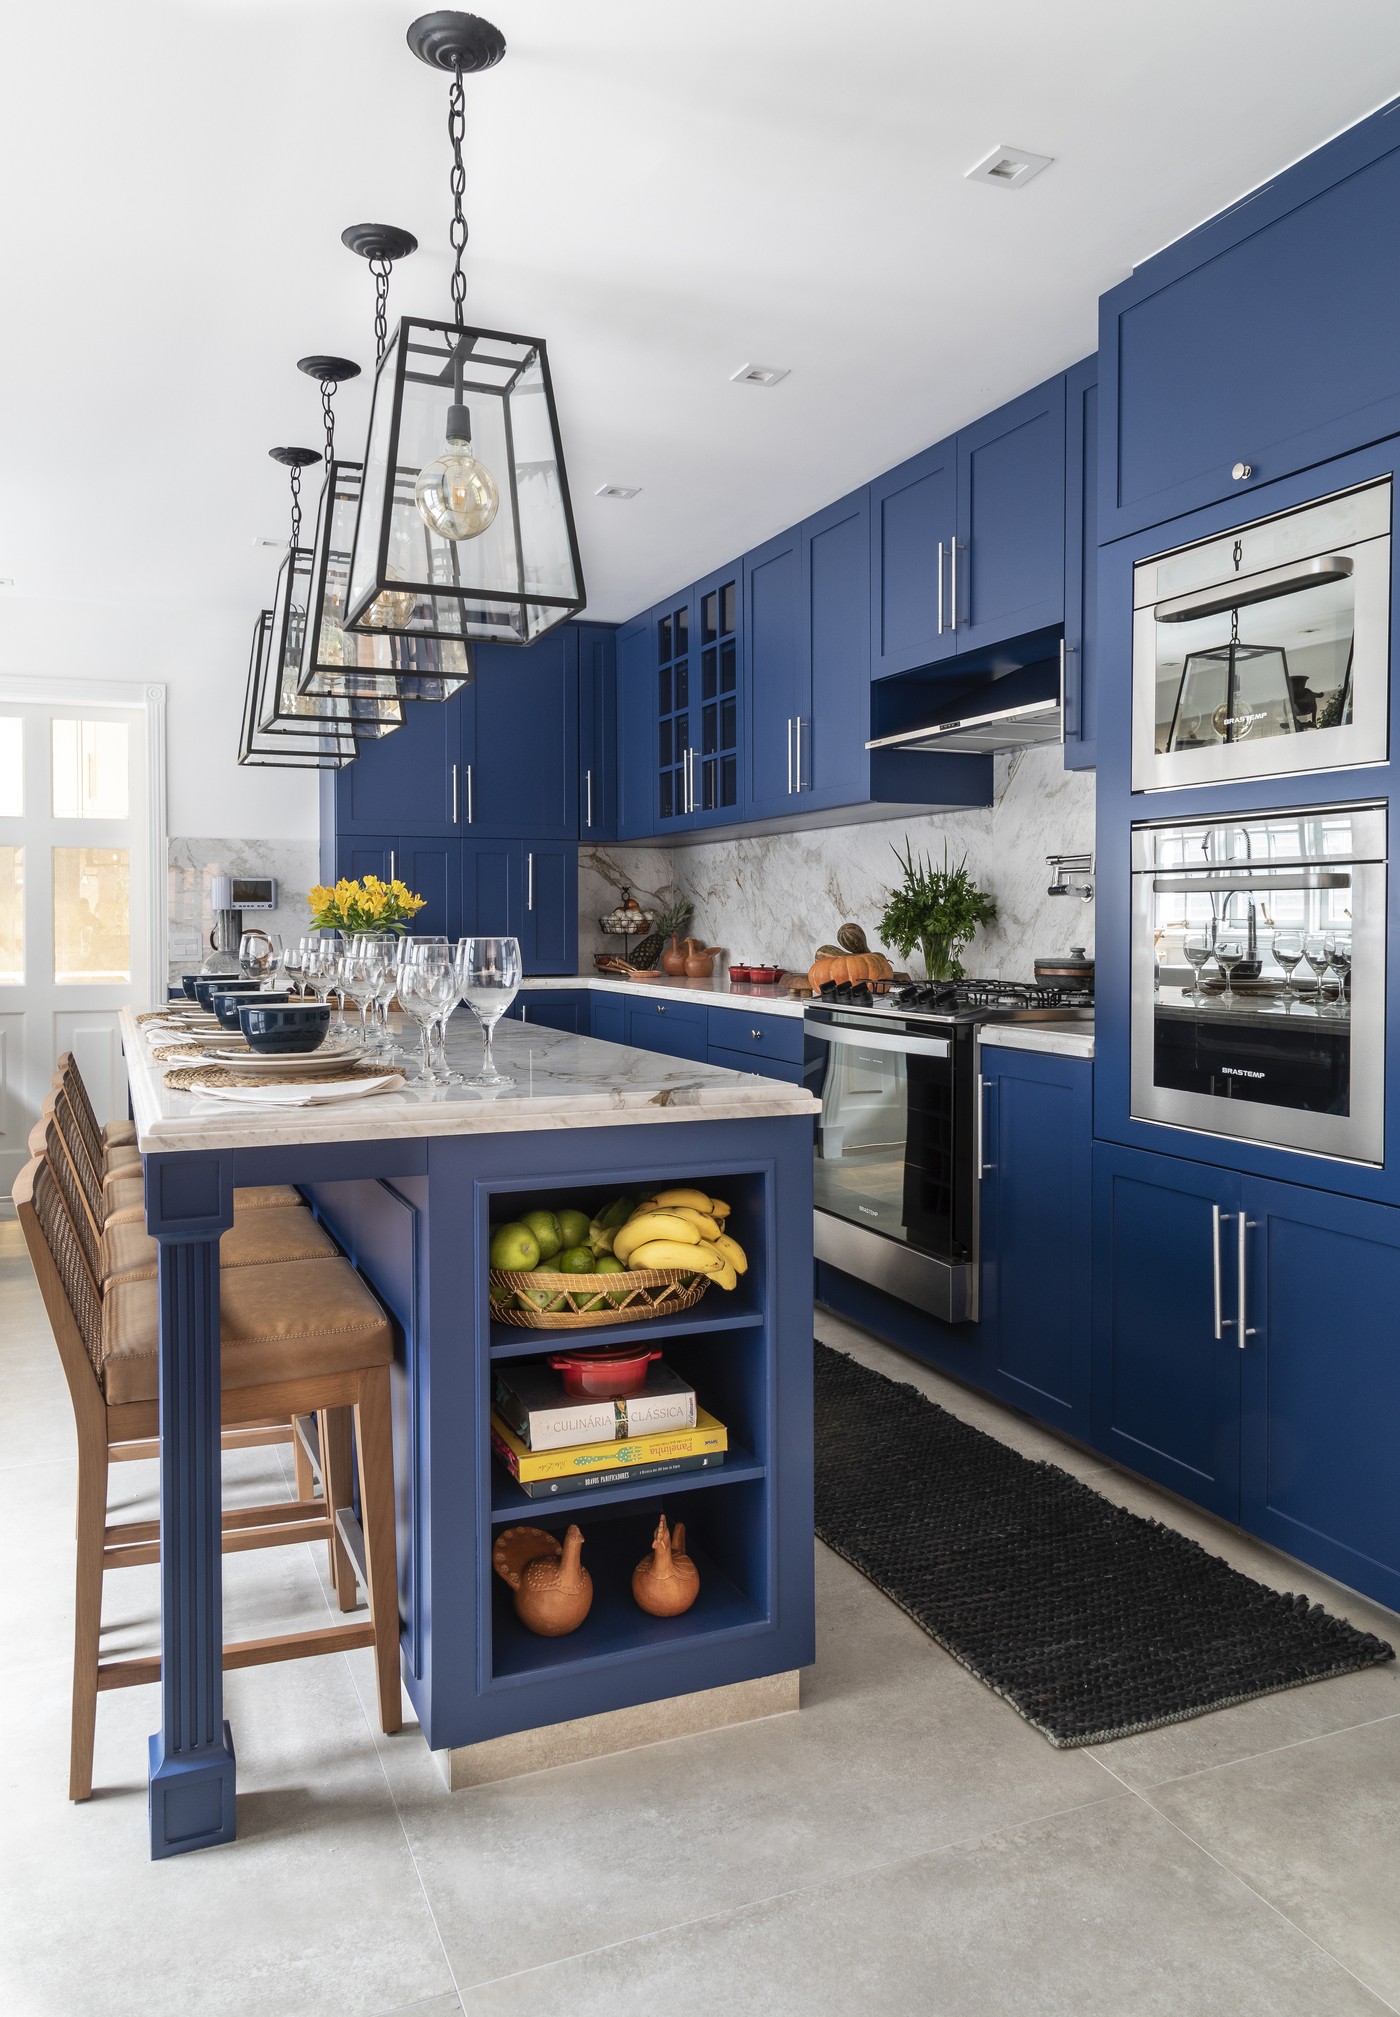 Décor do dia: marcenaria azul é destaque nesta cozinha com ilha (Foto:  Evelyn Müller )